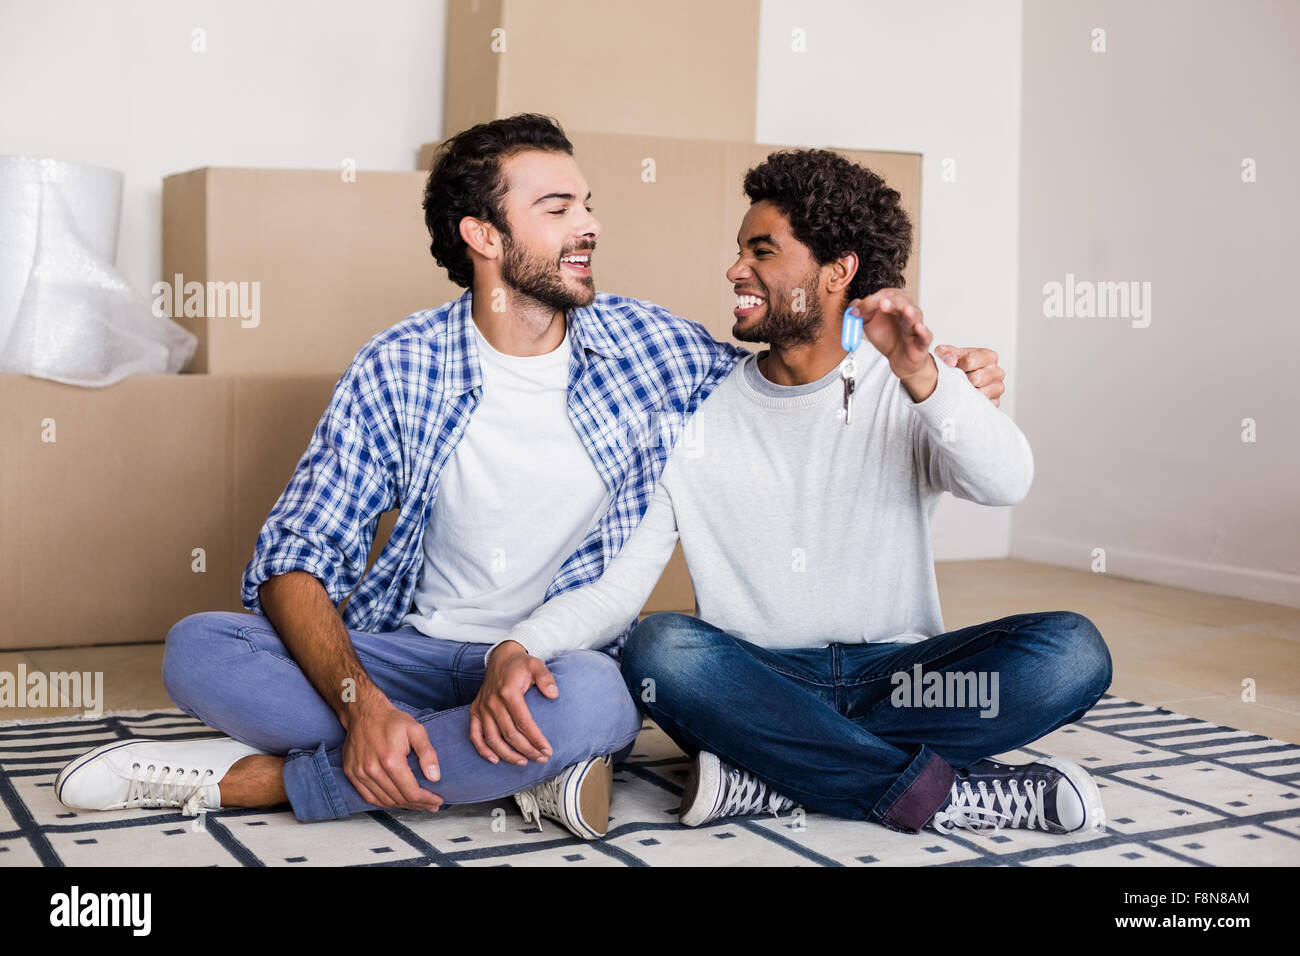 Happy gay couple holding nouvelles clés de maison sitting on floor Banque D'Images